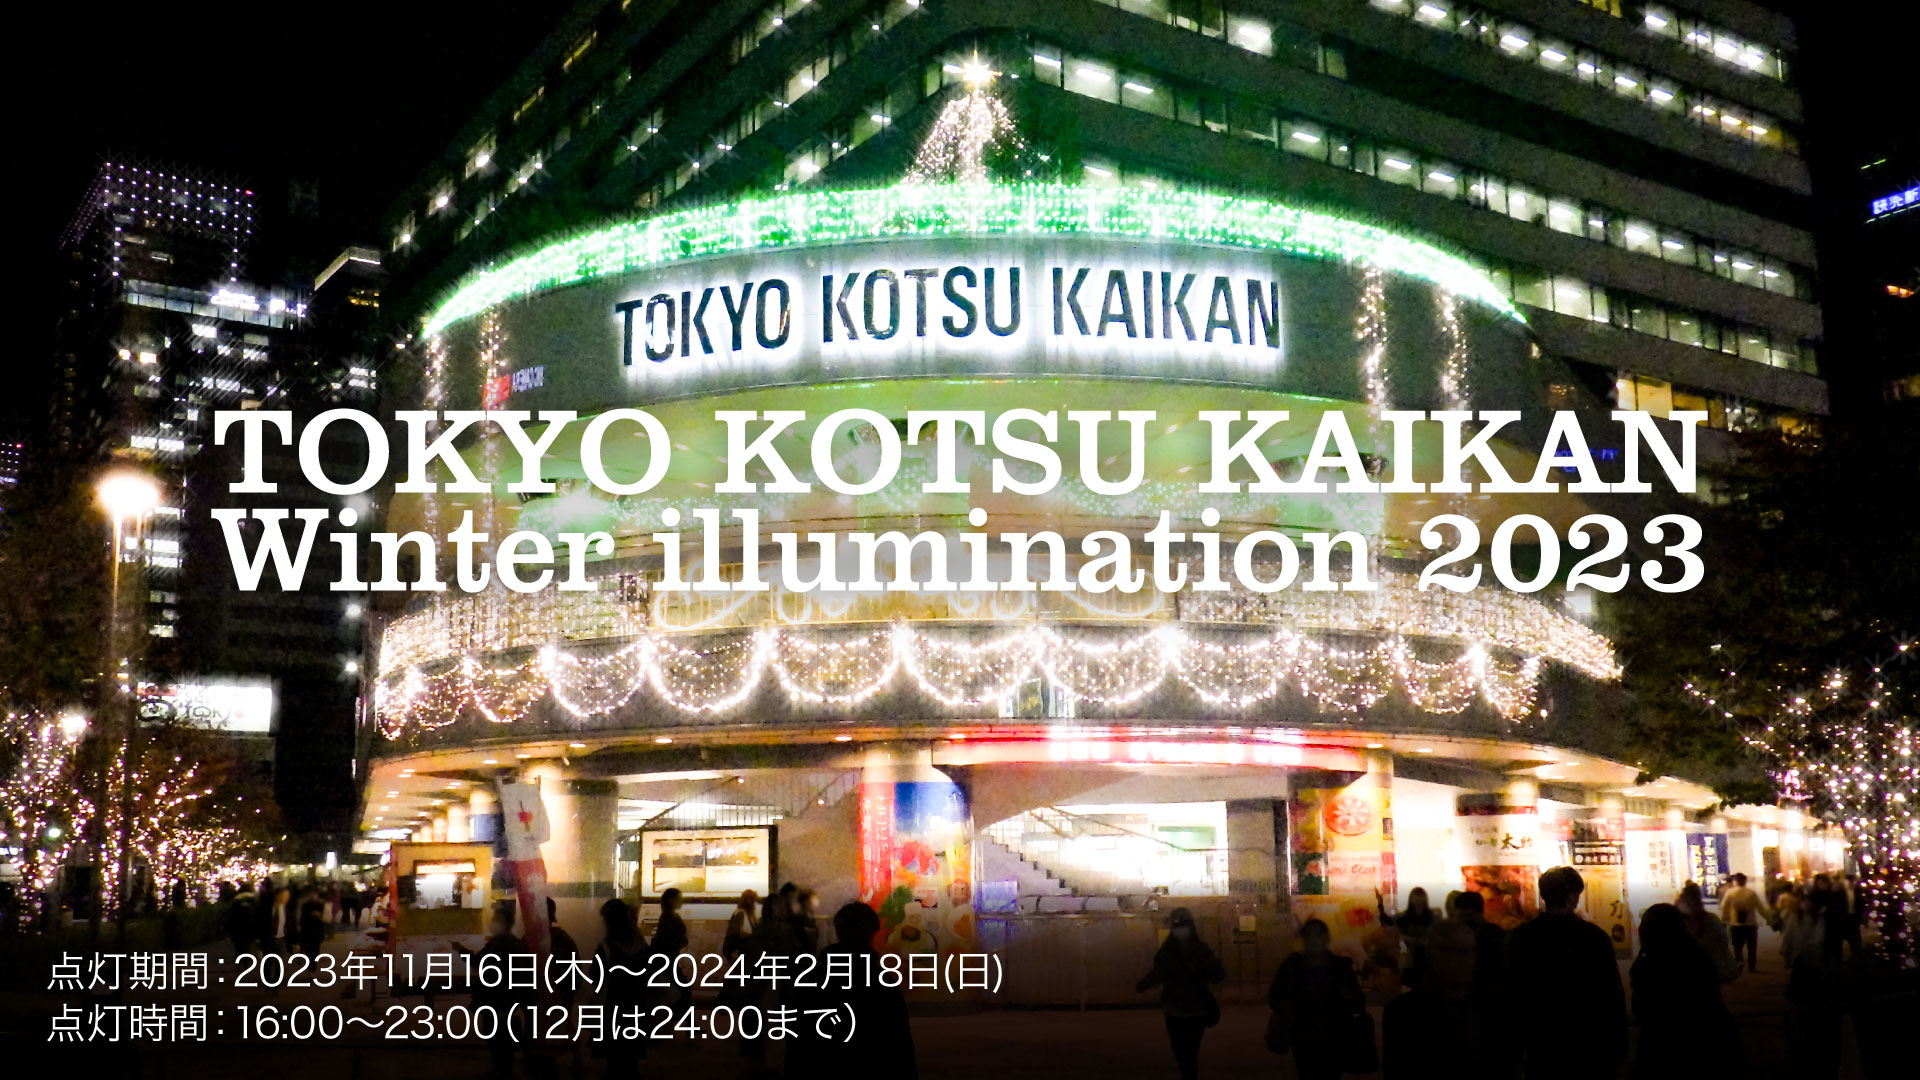 TOKYO KOTSU KAIKAN Winter illumination 2023